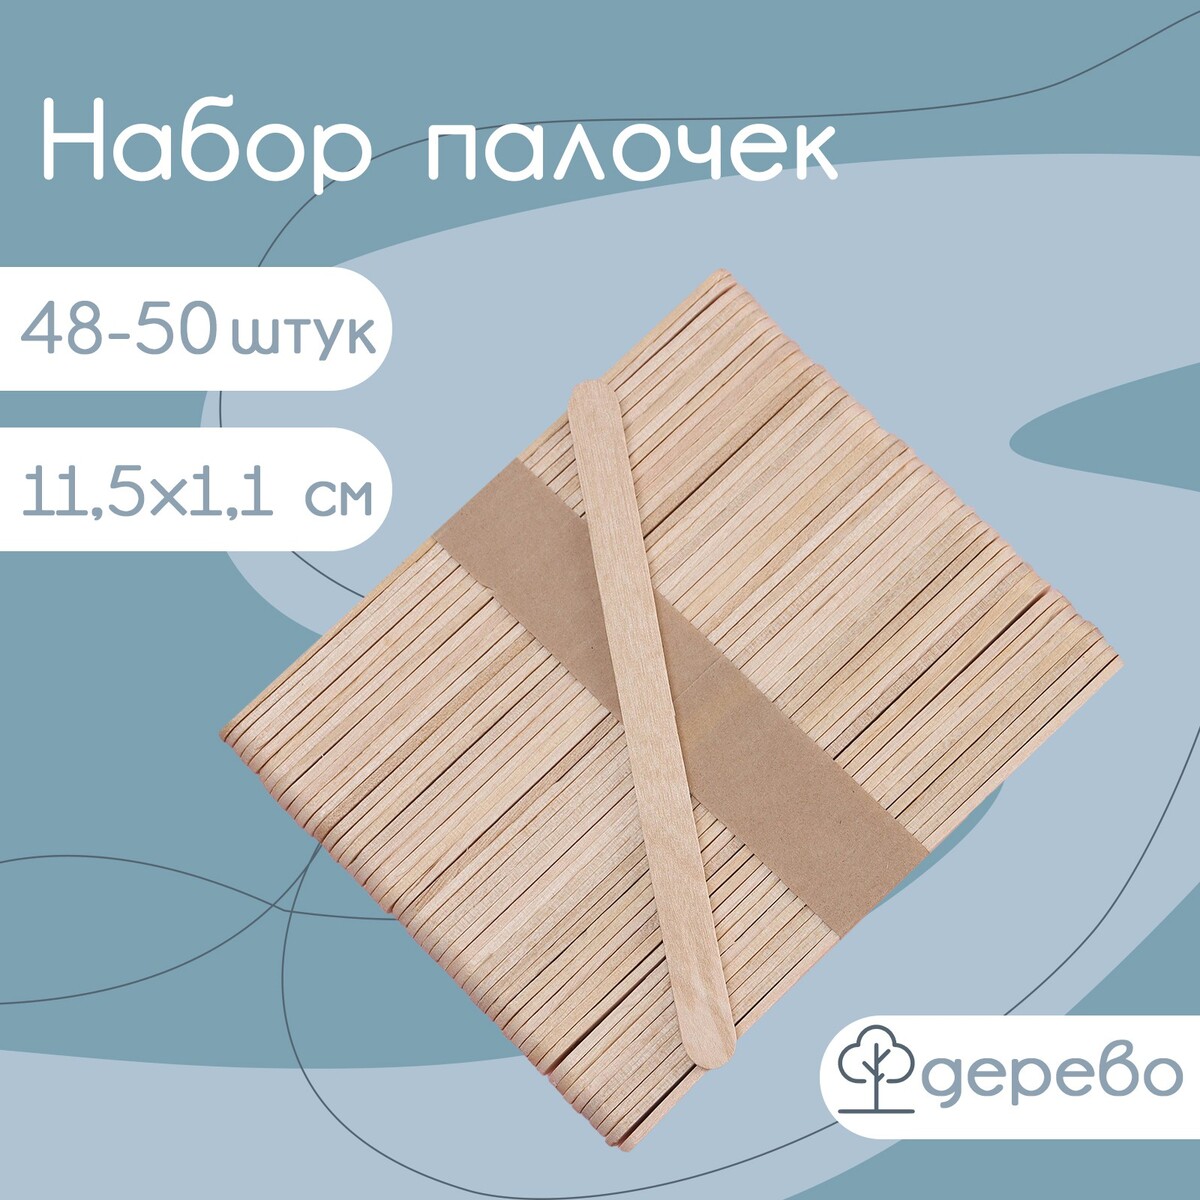 Набор деревянных палочек для мороженого, 11,5×1,1 см, 48-50 шт набор счетных палочек 80 штук мульти пульти